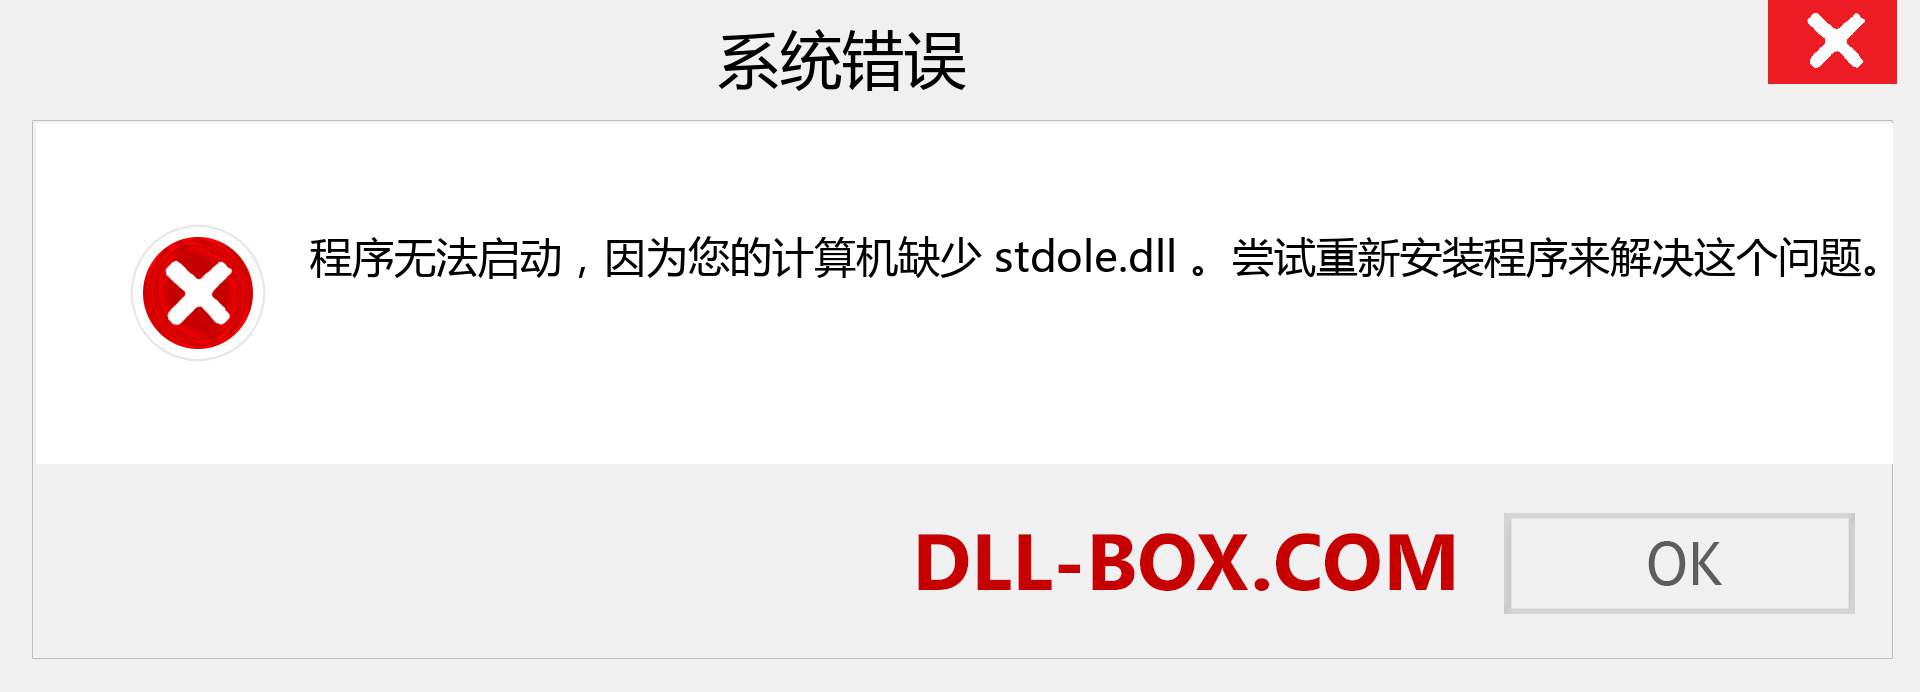 stdole.dll 文件丢失？。 适用于 Windows 7、8、10 的下载 - 修复 Windows、照片、图像上的 stdole dll 丢失错误